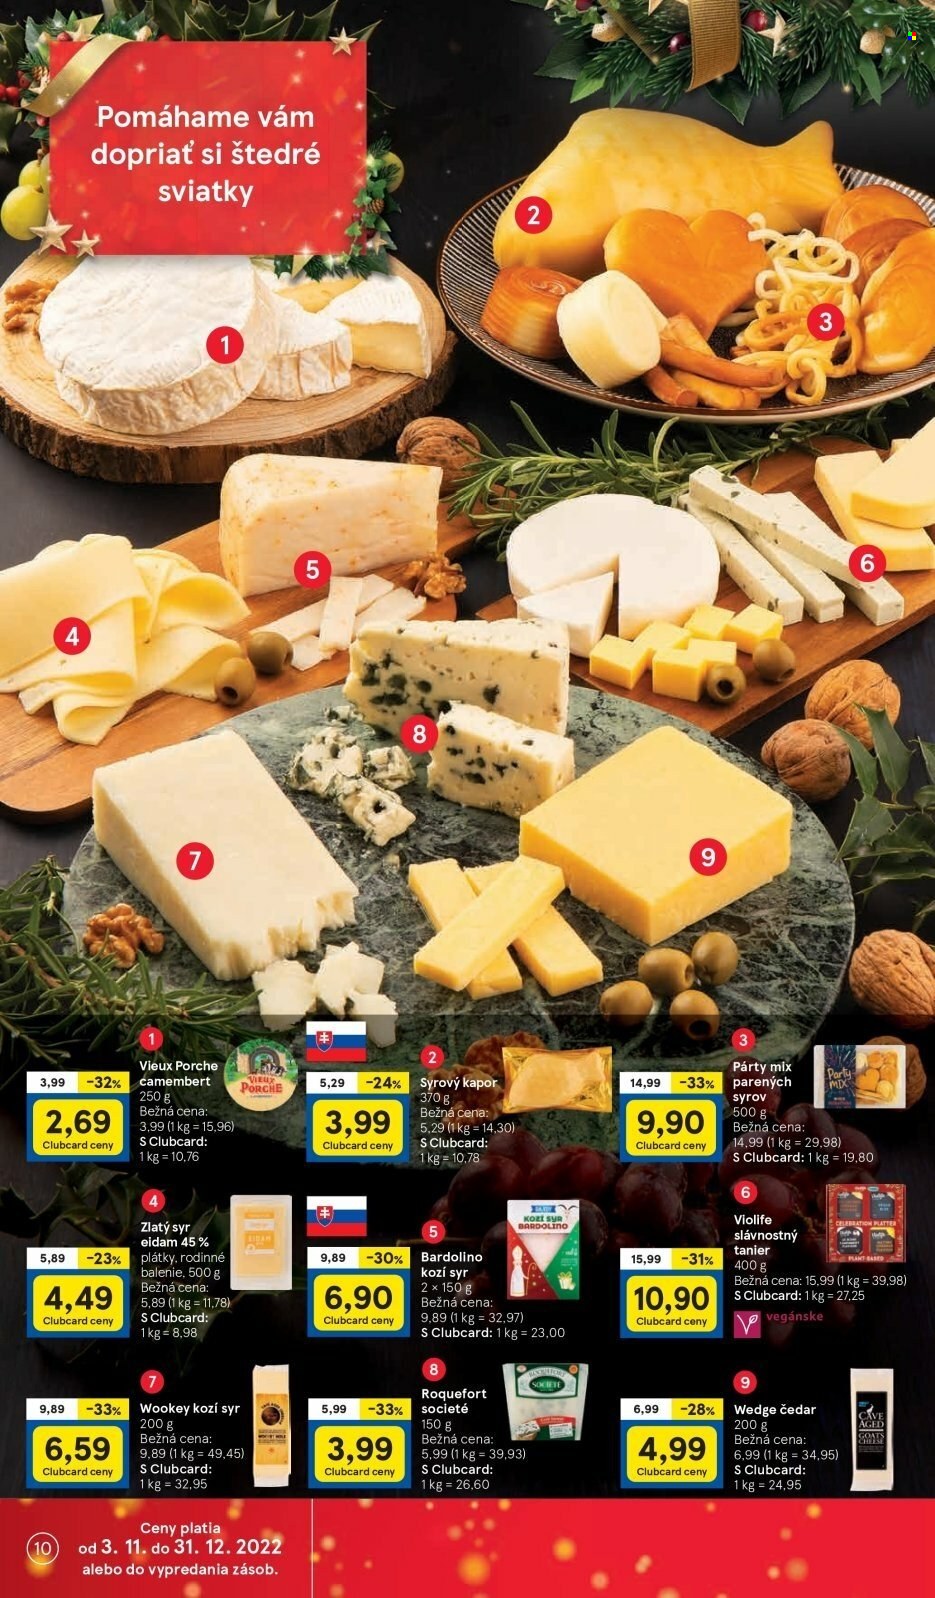 thumbnail - Leták TESCO - 7.12.2022 - 13.12.2022 - Produkty v akcii - eidam, roquefort, syr, zrejúci syr, čedar, kozí syr, camembert, Violife, syr s plesňou, Bardolino, tanier. Strana 10.